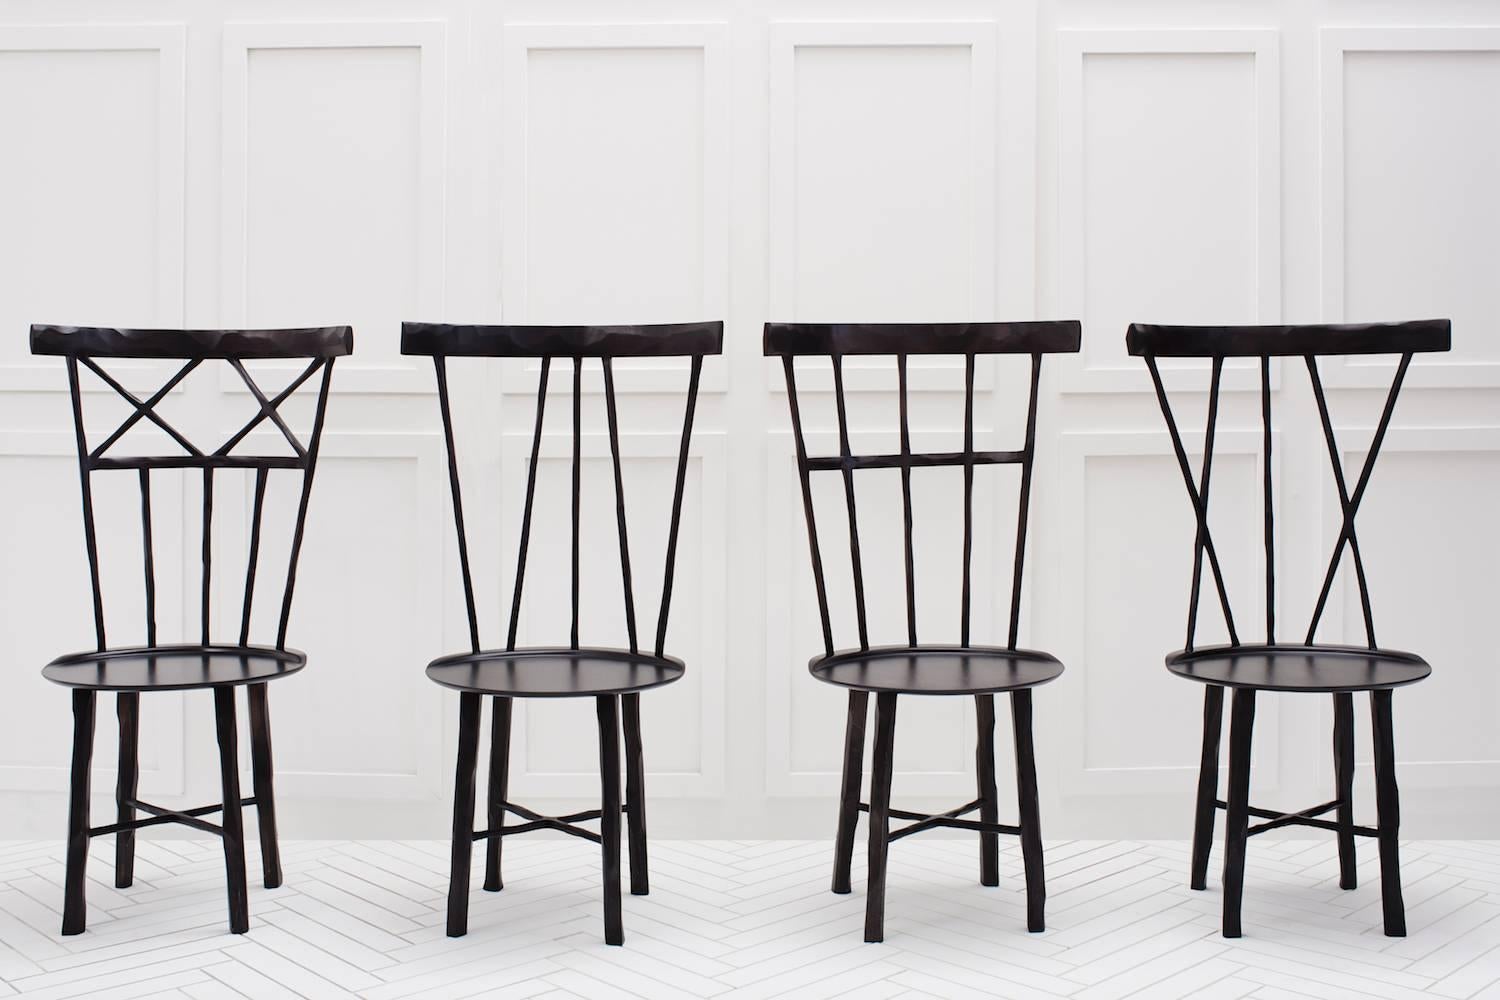 Eine moderne Interpretation des klassischen Windsor-Stuhls. Jede Speiche und jedes Bein aus hartem Ahornholz ist sorgfältig von Hand geschnitzt und hat weiche, organische Konturen. 

Bitte beachten Sie, dass die Vorlaufzeiten für individuelle